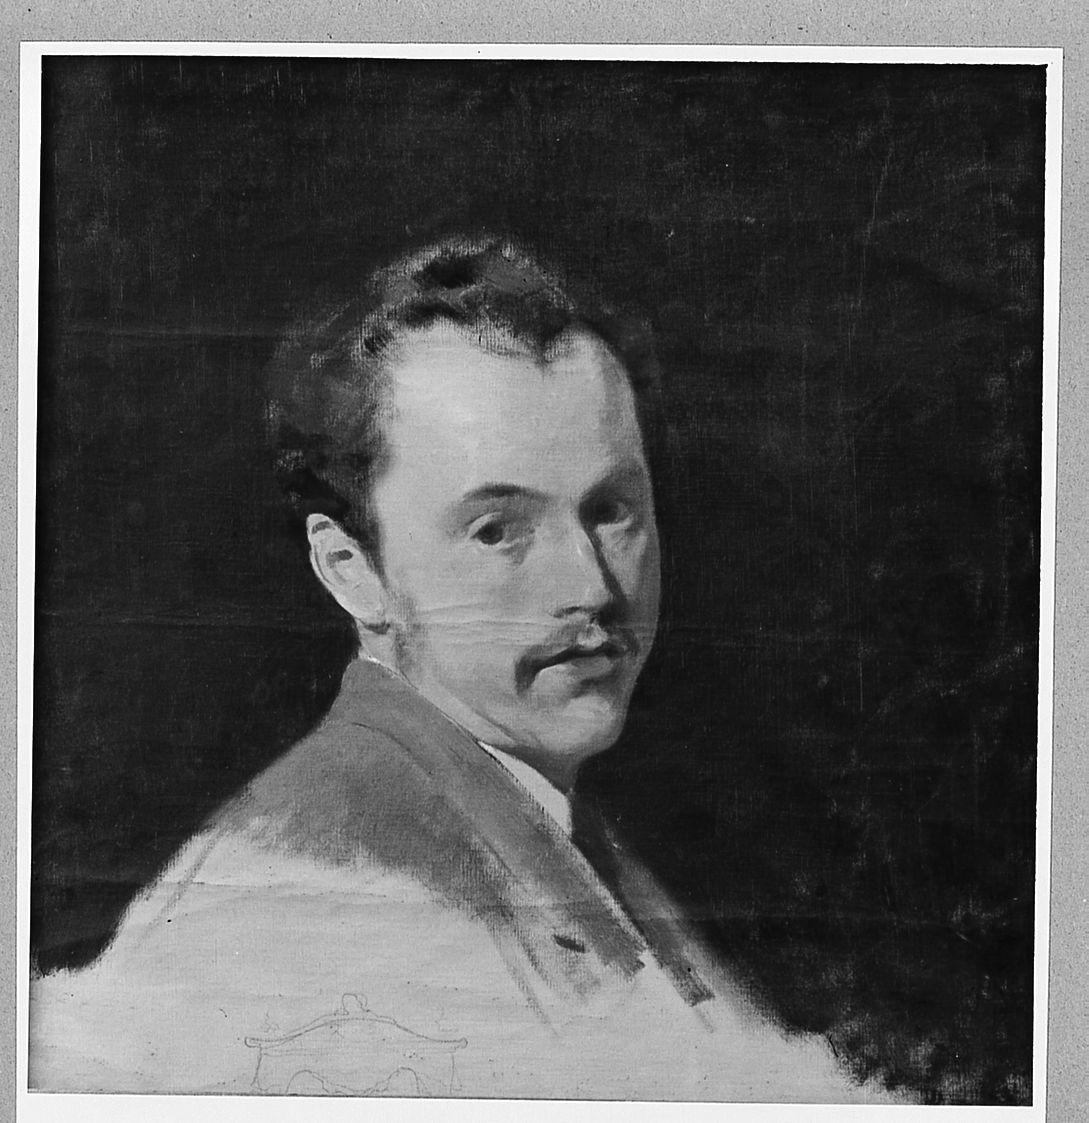 Robert William Spranger (dipinto) di Conti Tito (seconda metà sec. XIX)